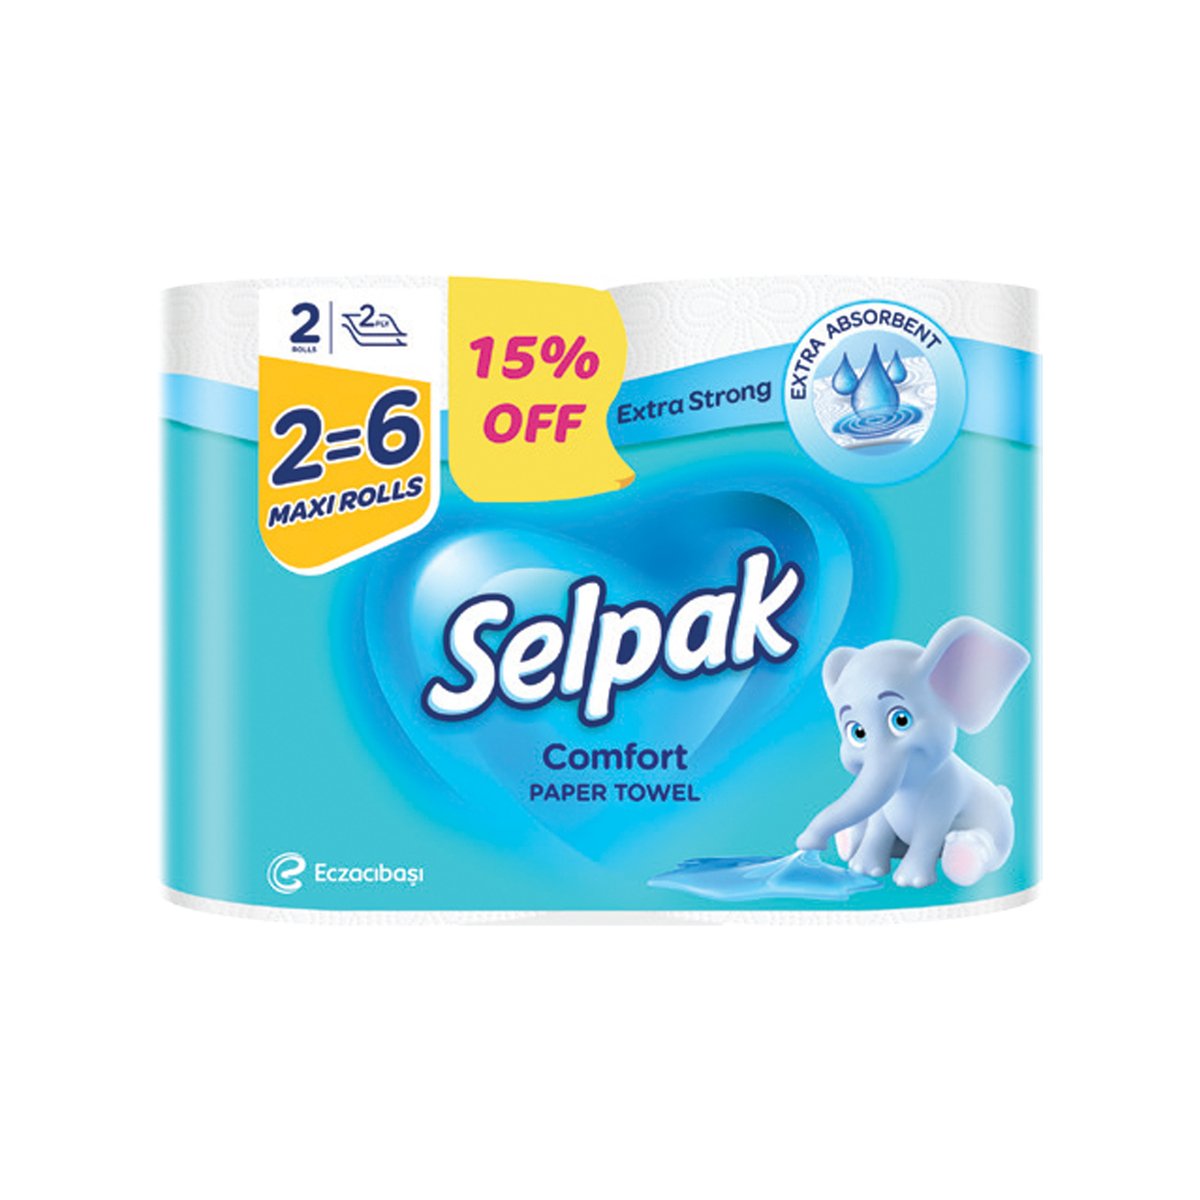 Selpak Comfort Paper Towel Maxi Rolls 2 pcs